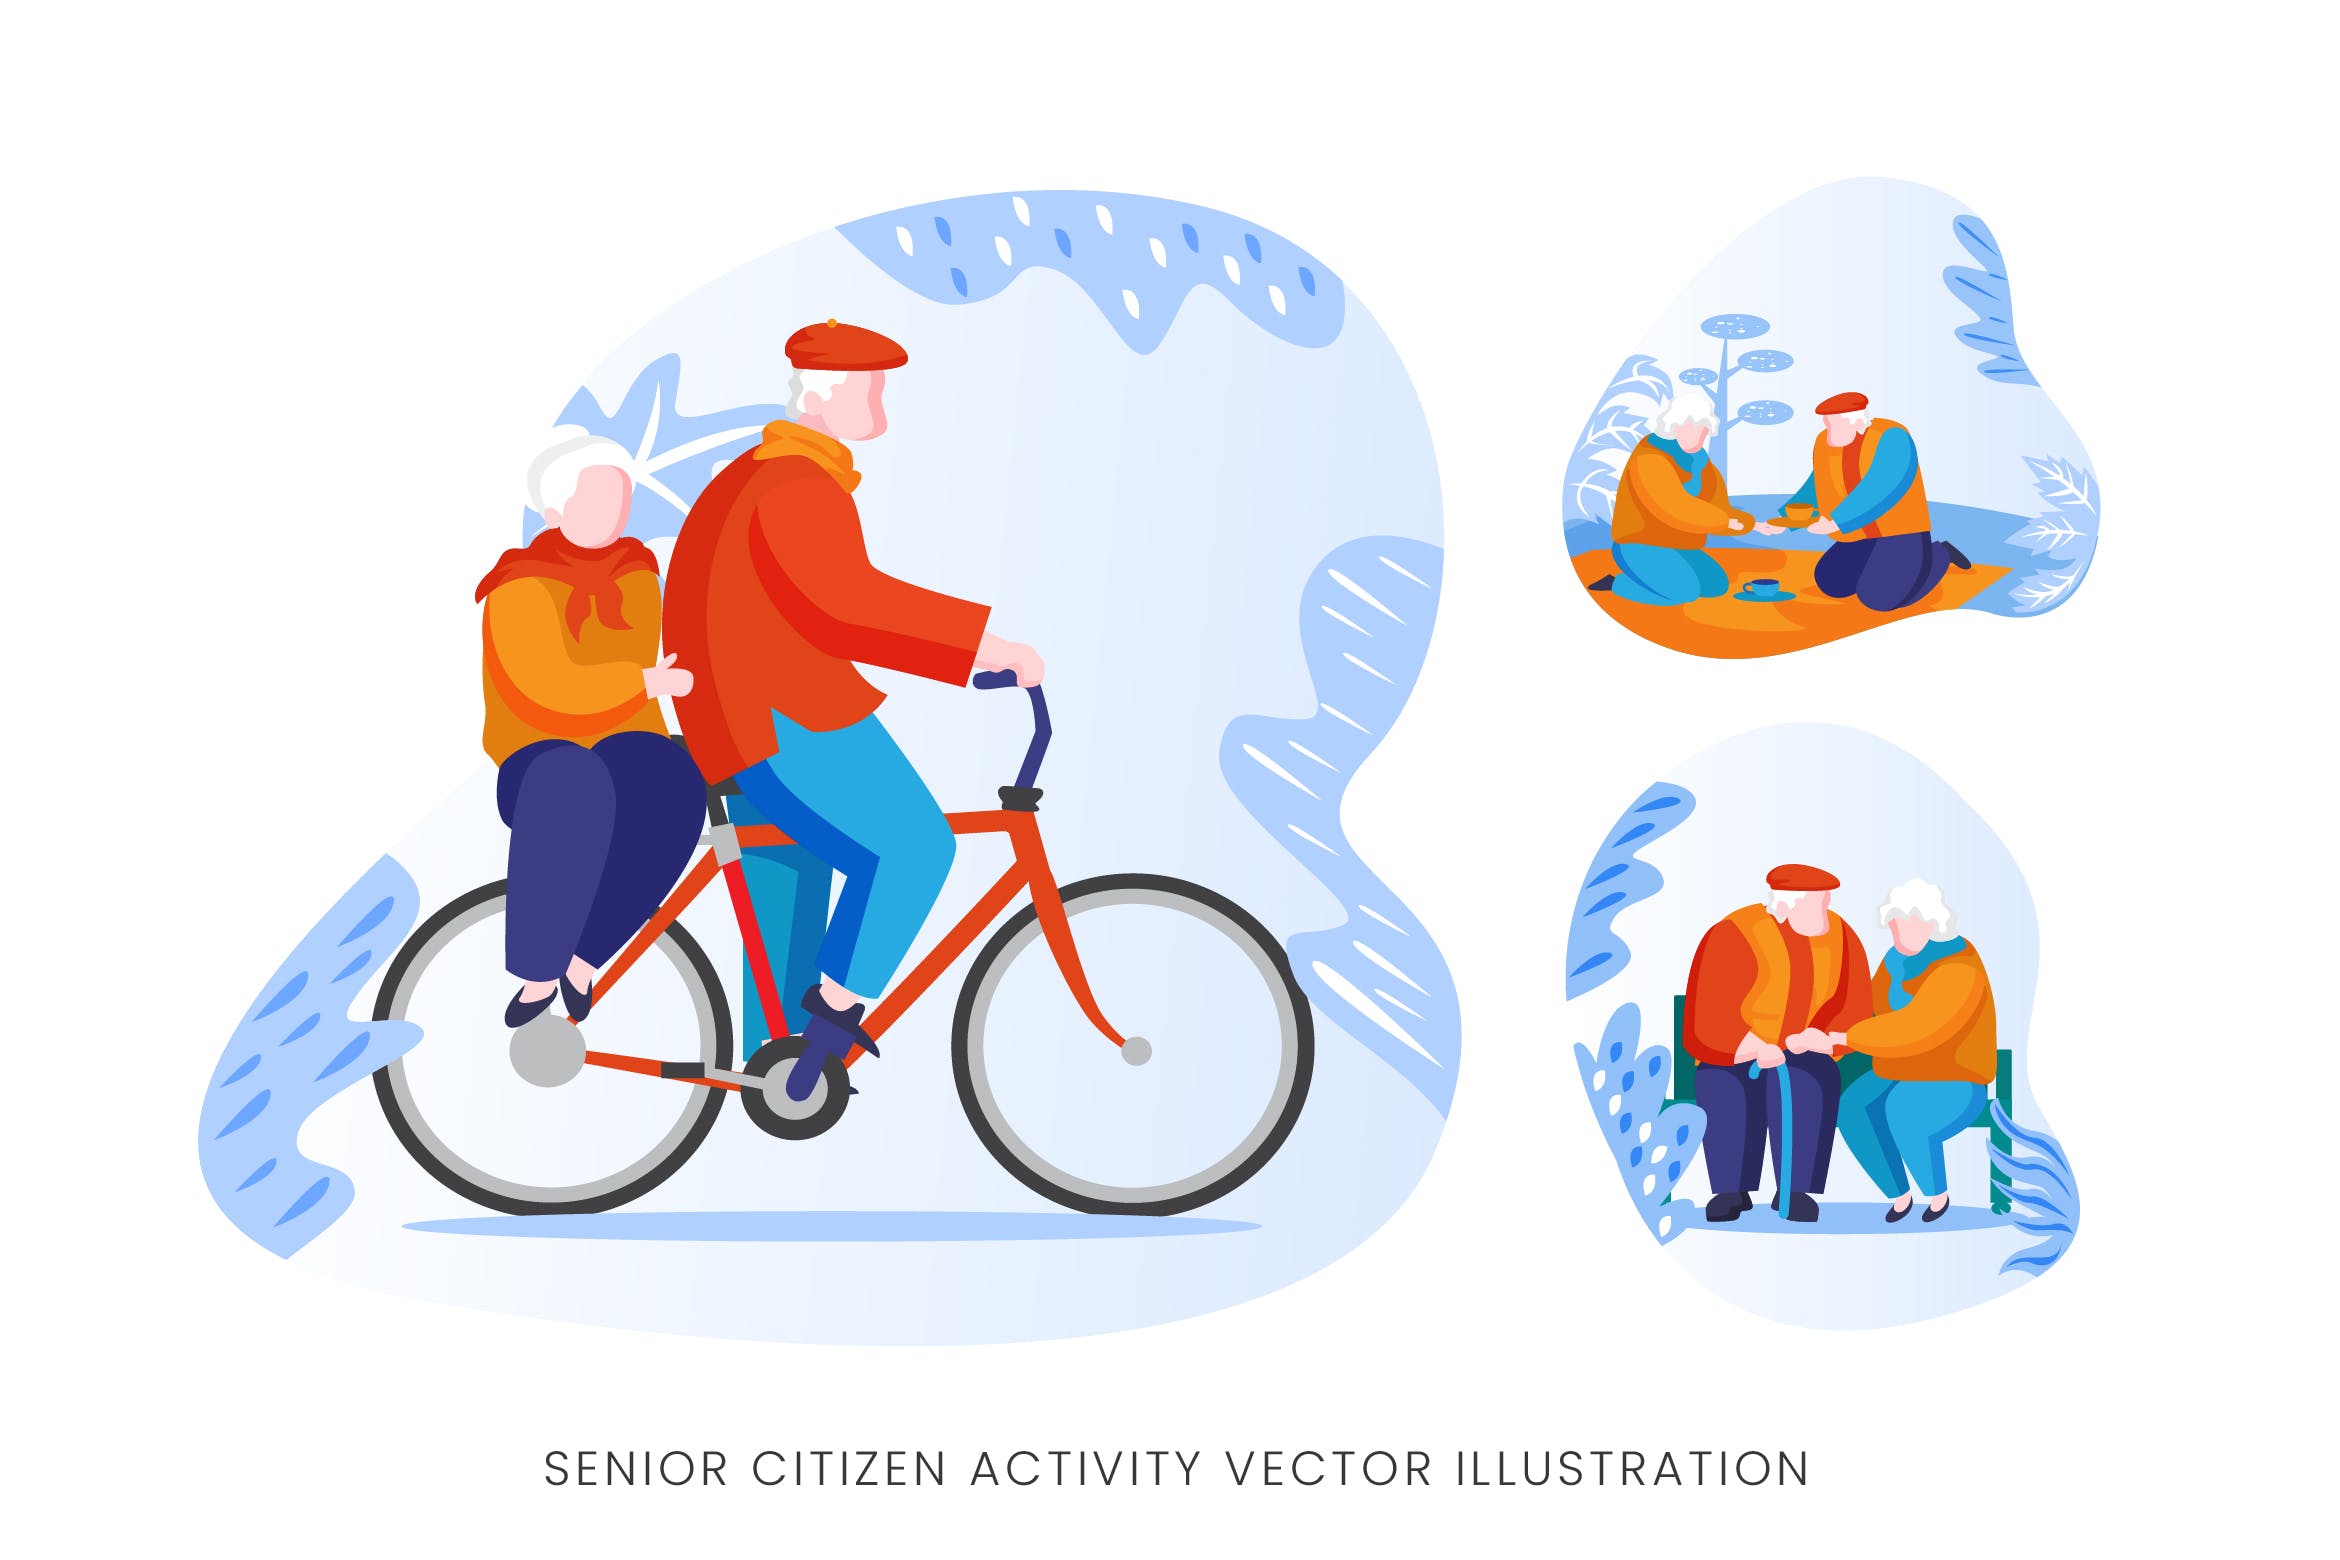 老年人生活人物形象矢量手绘蚂蚁素材精选设计素材 Senior Citizen Vector Character Set插图